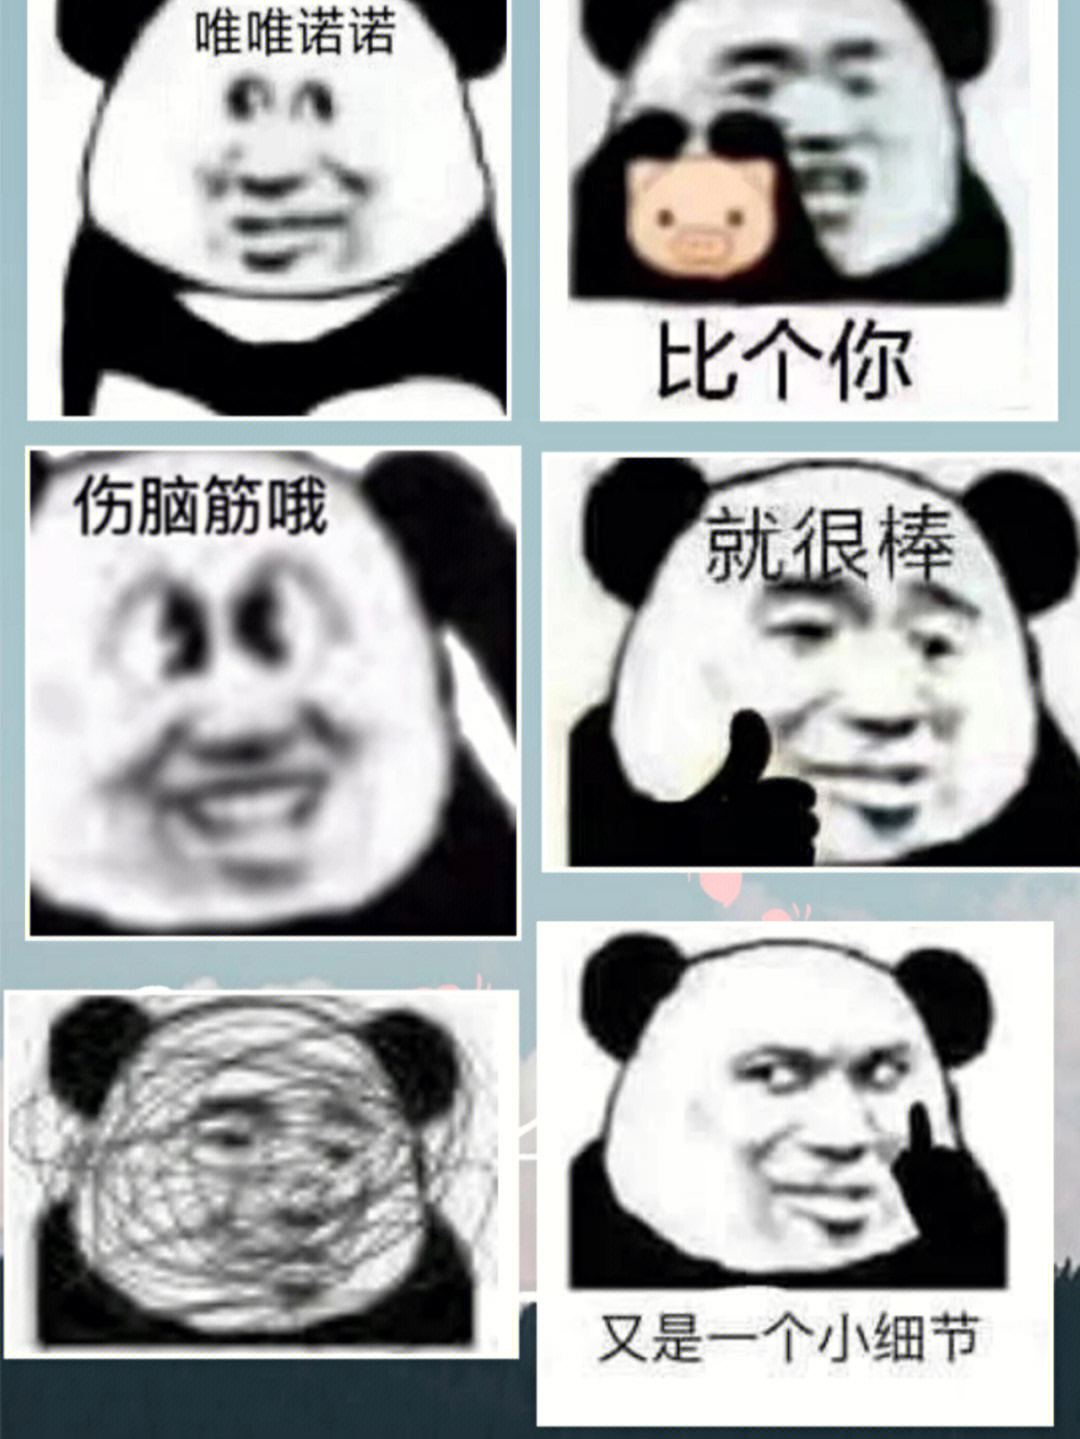 熊猫头表情包唯唯诺诺图片